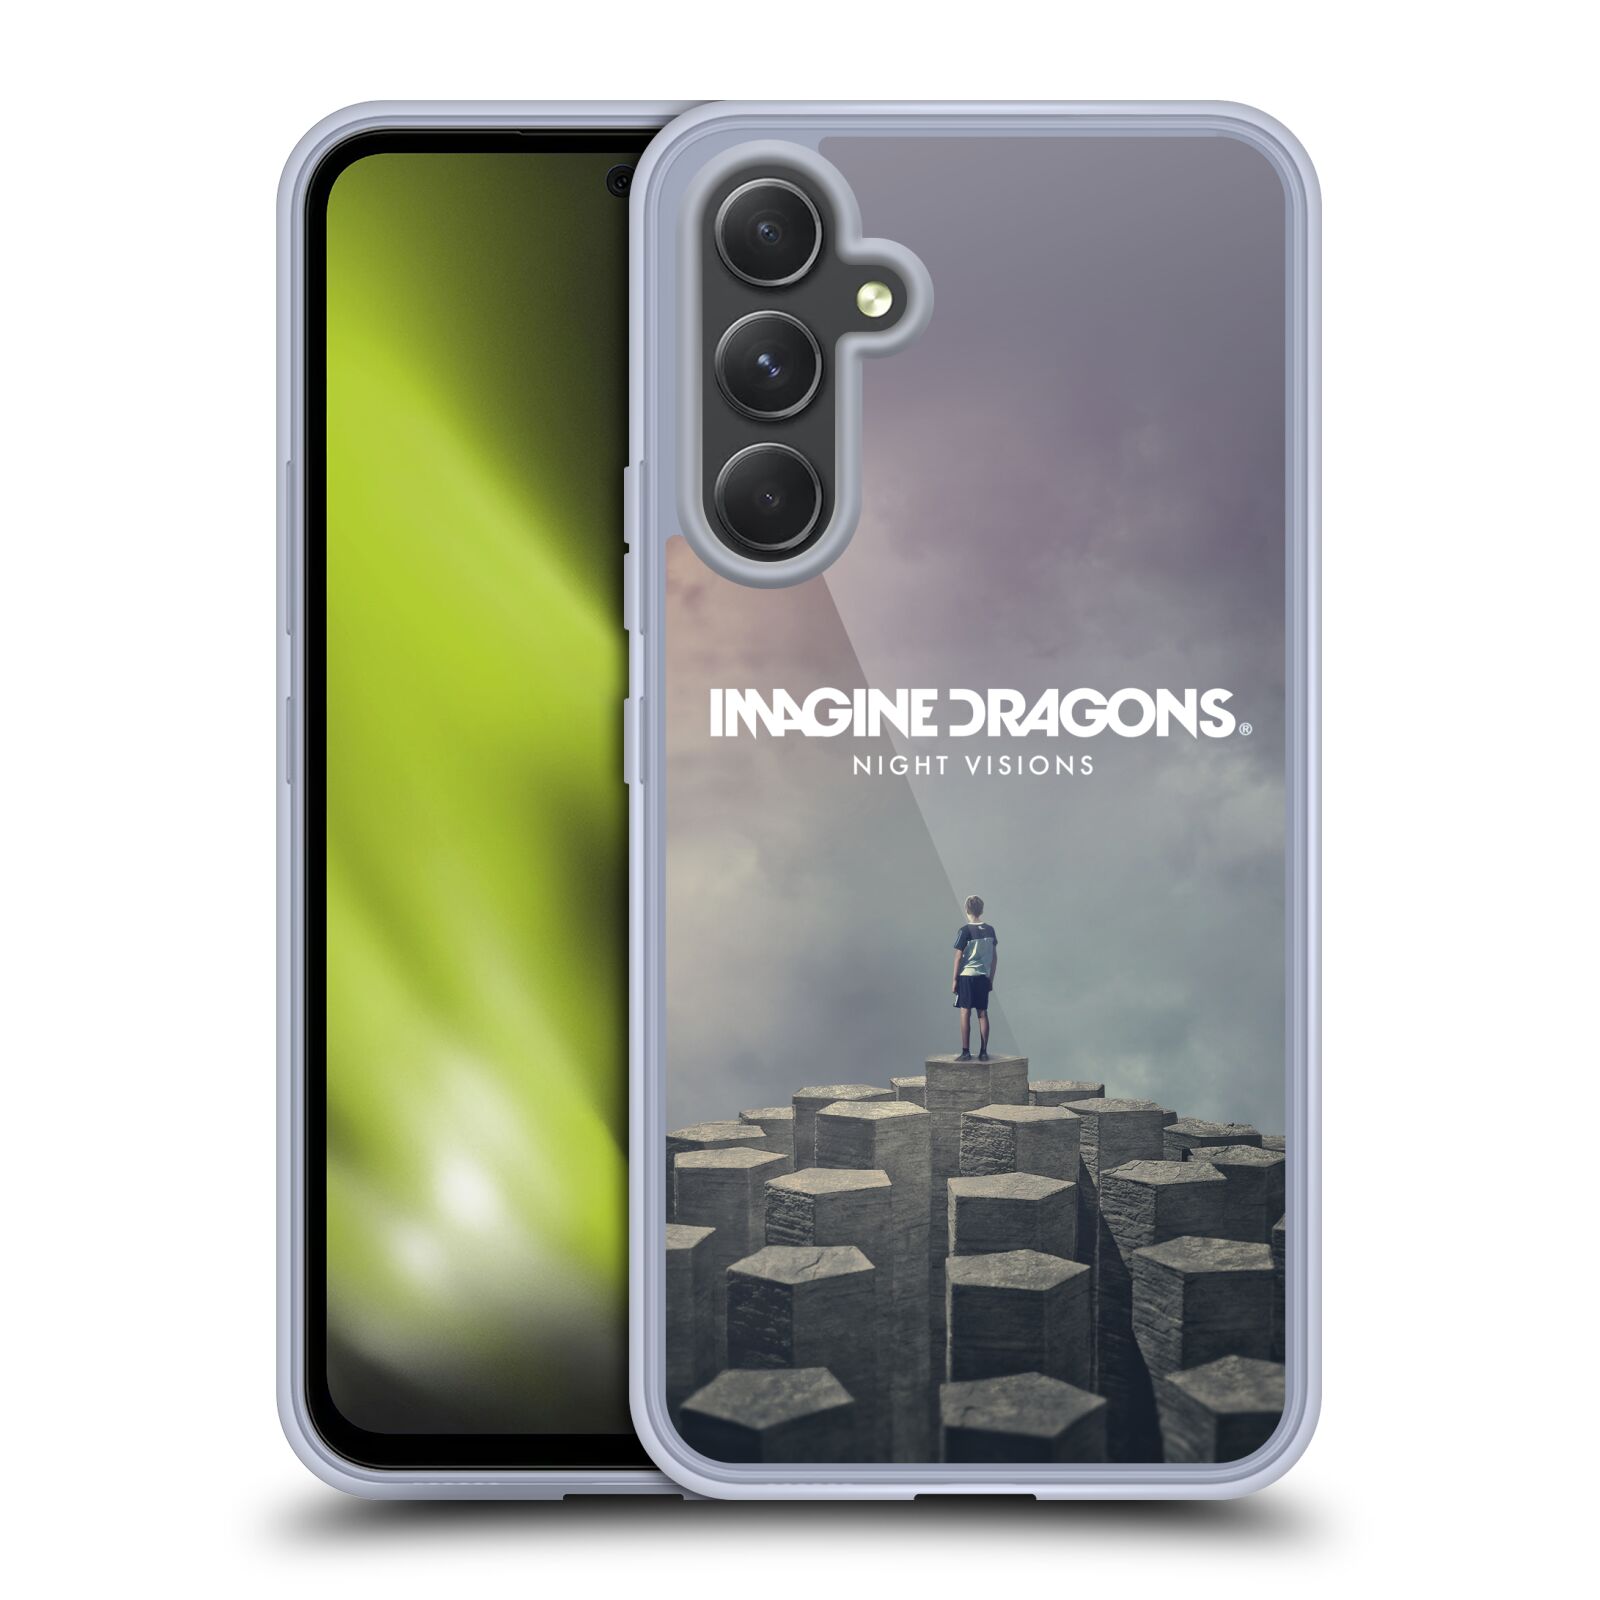 Silikonové pouzdro na mobil Samsung Galaxy A54 5G - Imagine Dragons - Night Visions (Silikonový kryt, obal, pouzdro na mobilní telefon Samsung Galaxy A54 5G s licencovaným motivem Imagine Dragons - Night Visions)